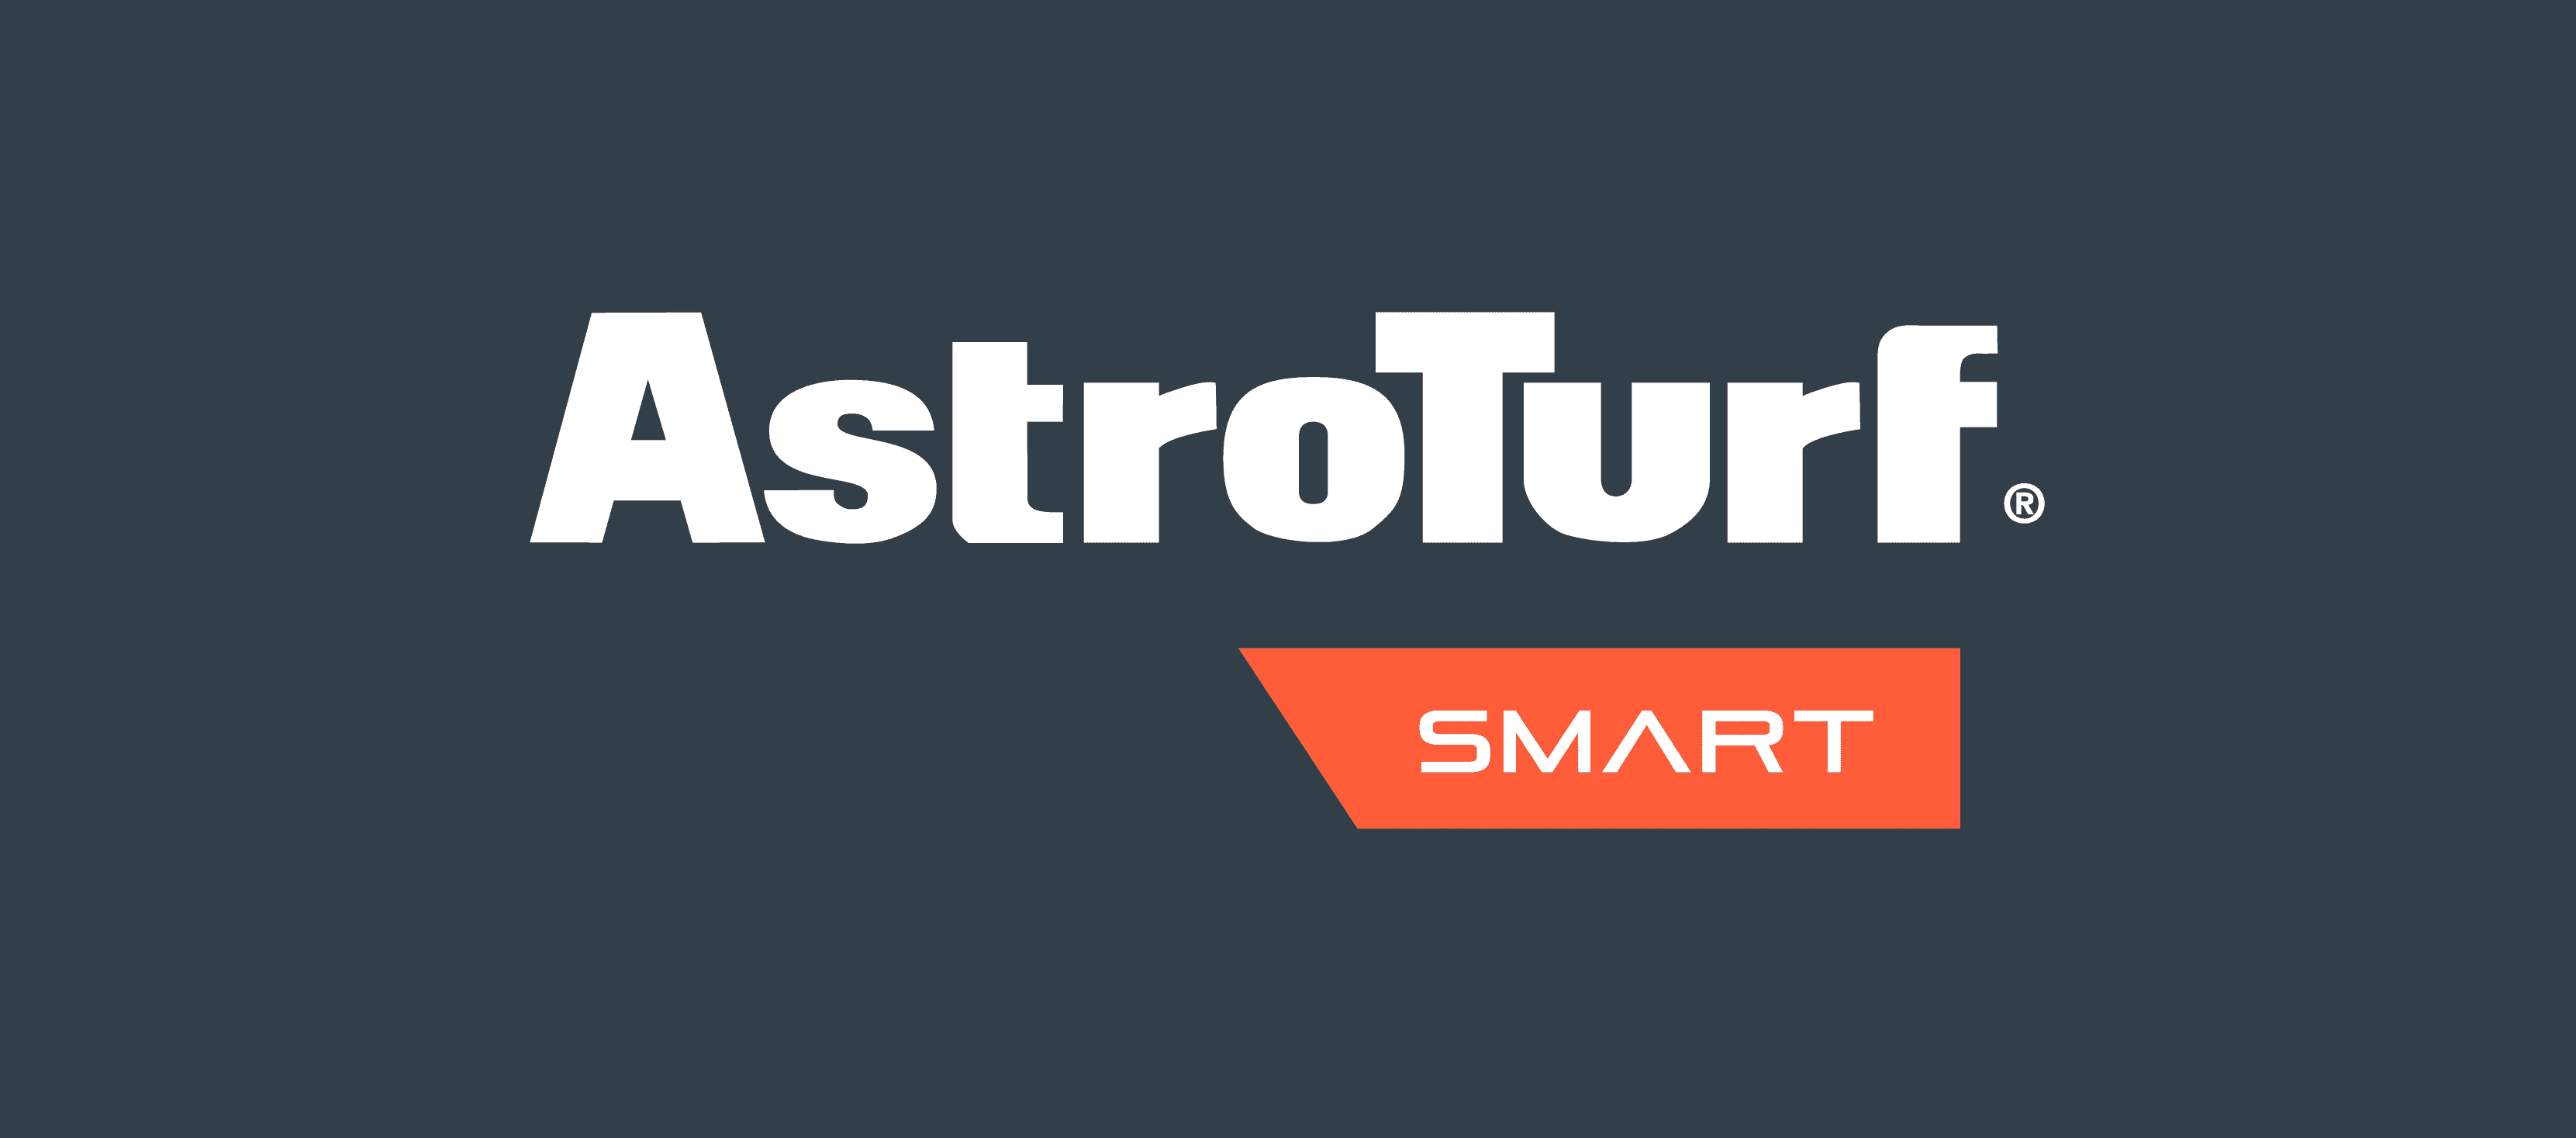 AstroTurf Smart